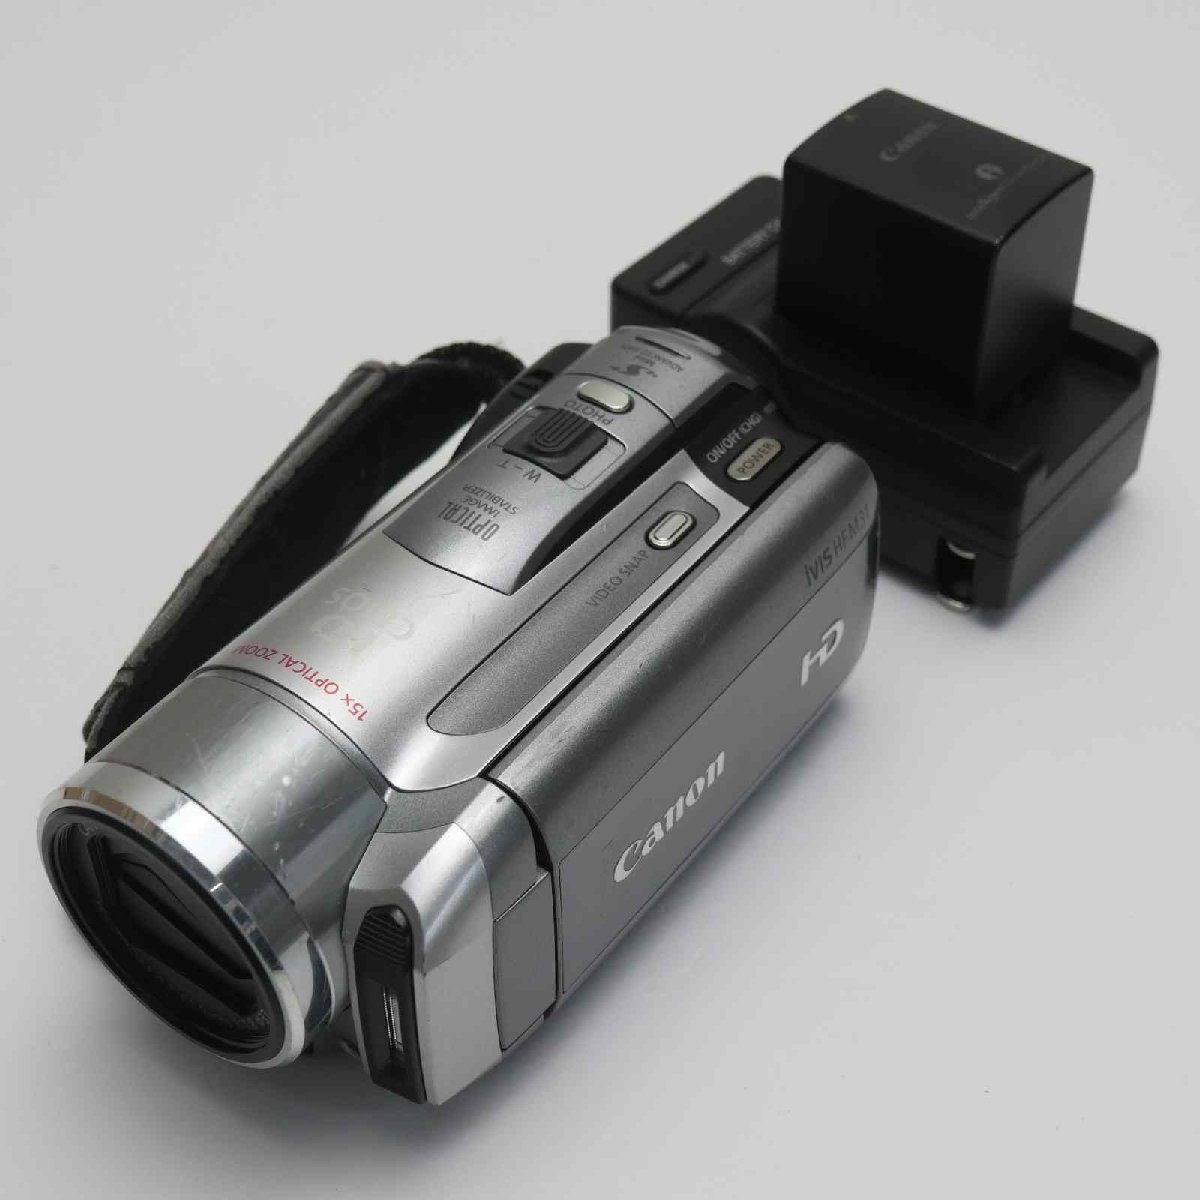 美品 iVIS HF M31 シルバー 即日発送 Canon デジタルビデオカメラ 本体 あすつく 土日祝発送OK